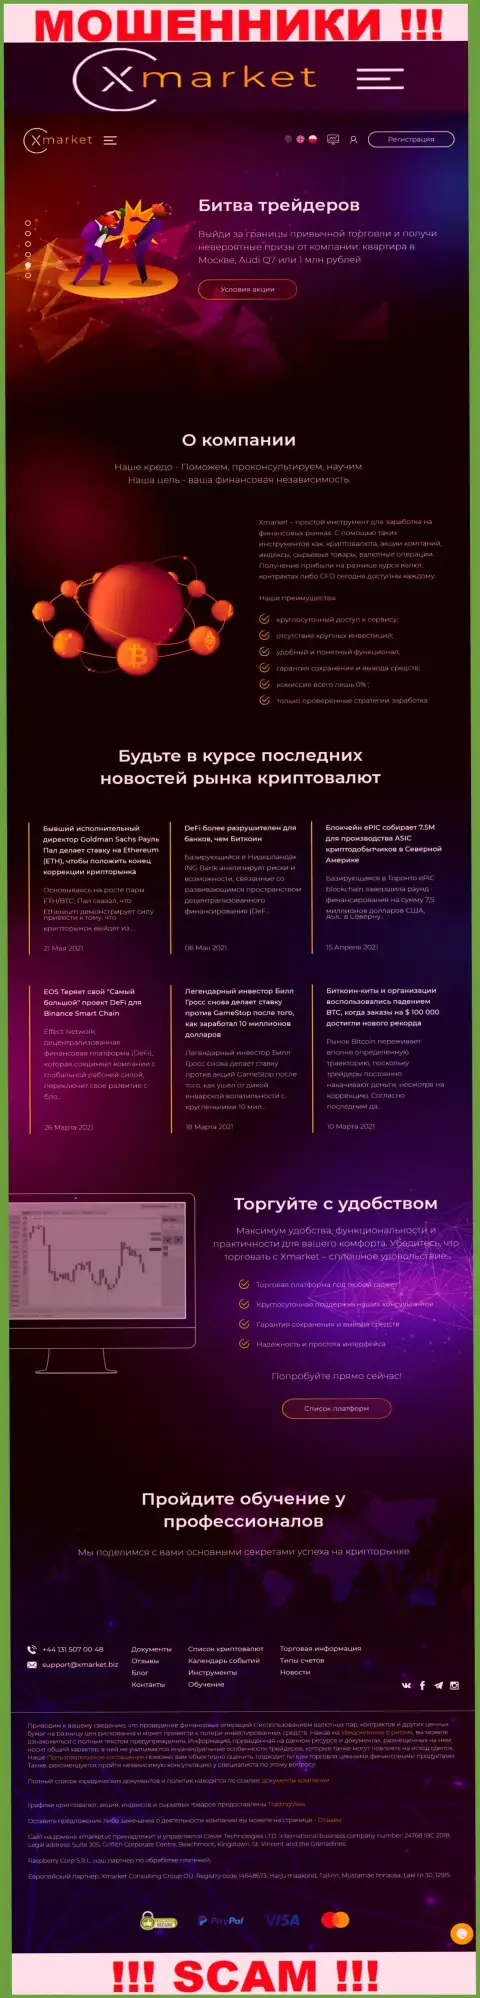 Официальный информационный сервис интернет-мошенников и шулеров организации Х Маркет